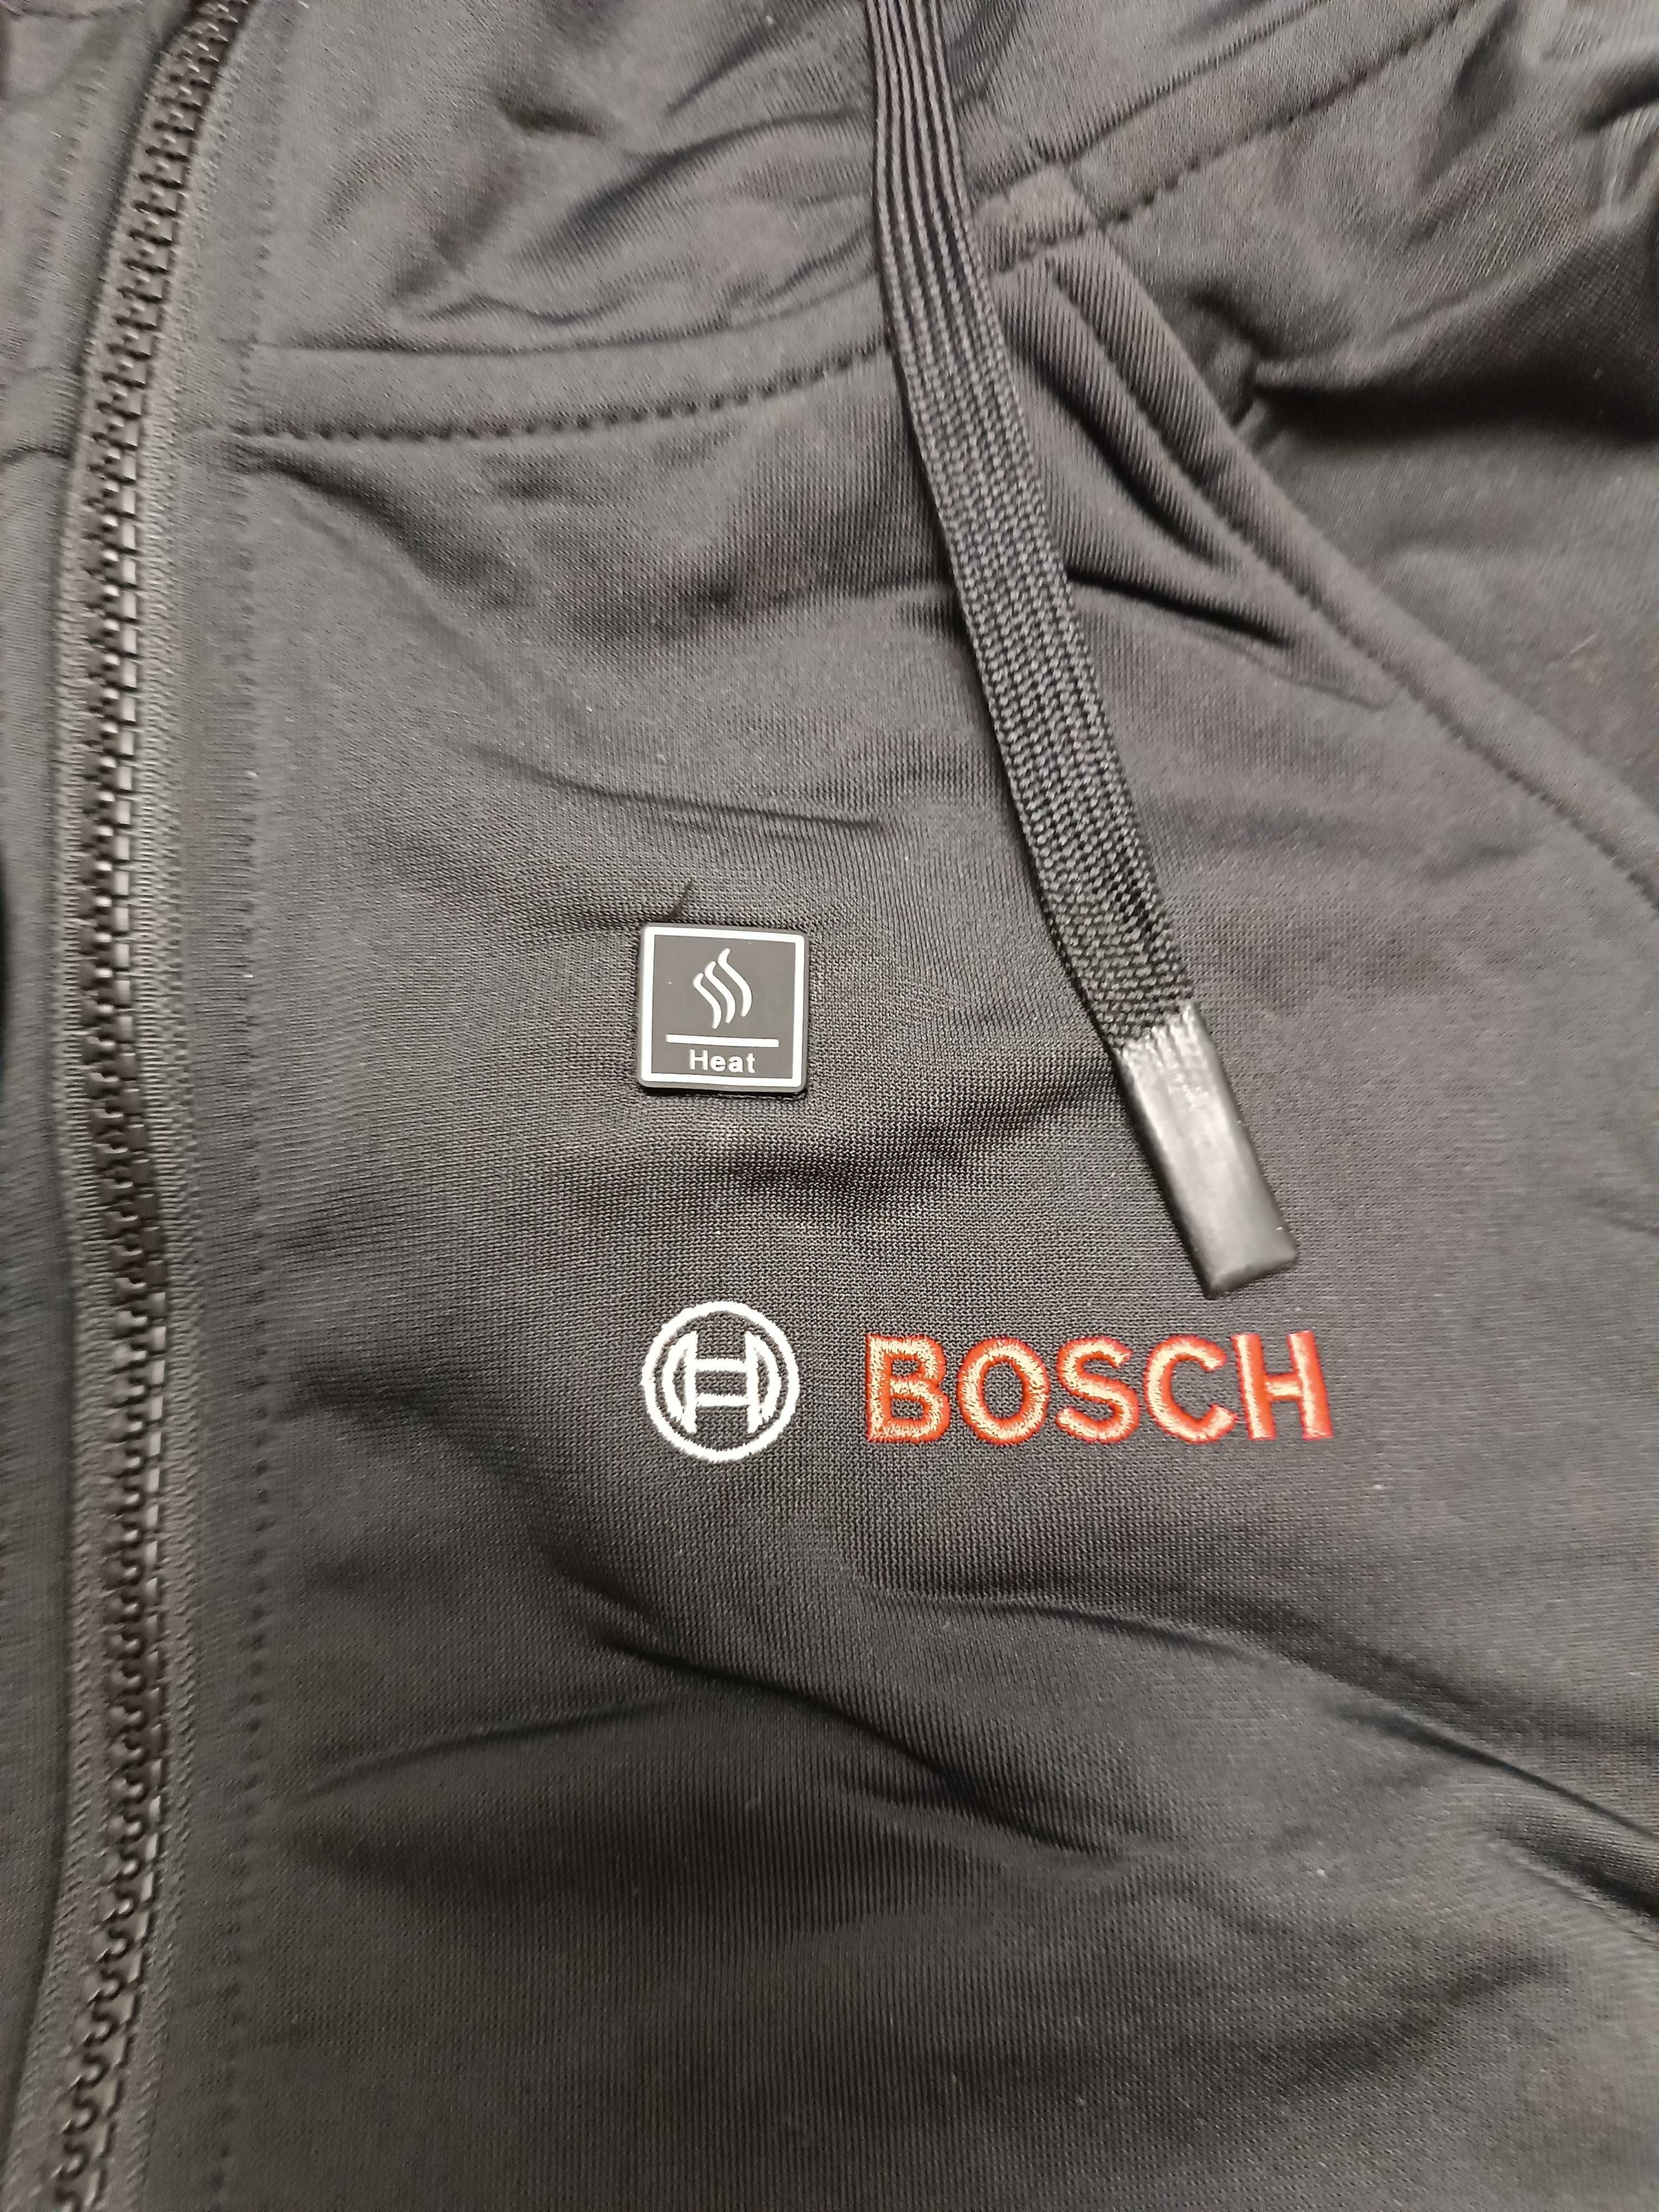 Bosch Professional GHH 12+18V XA акумуляторна  з підігрівом, L